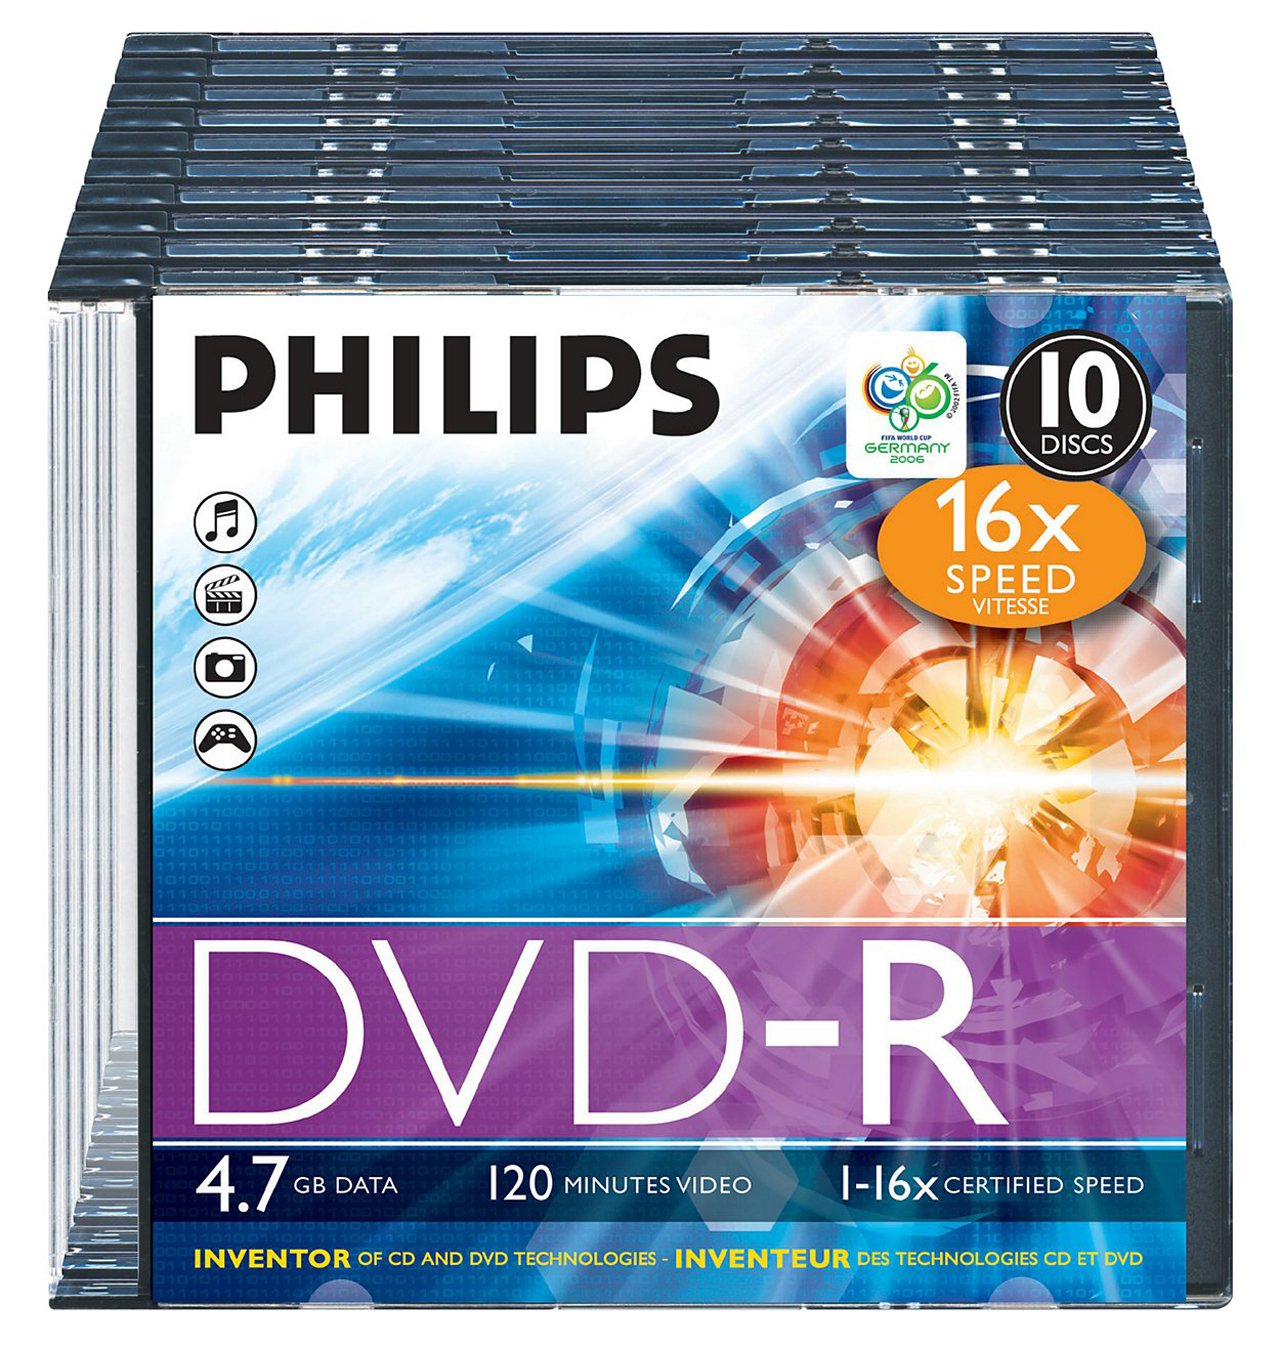 PHILIPS DVD-R DM4S6S10F/00 10er Slim Case